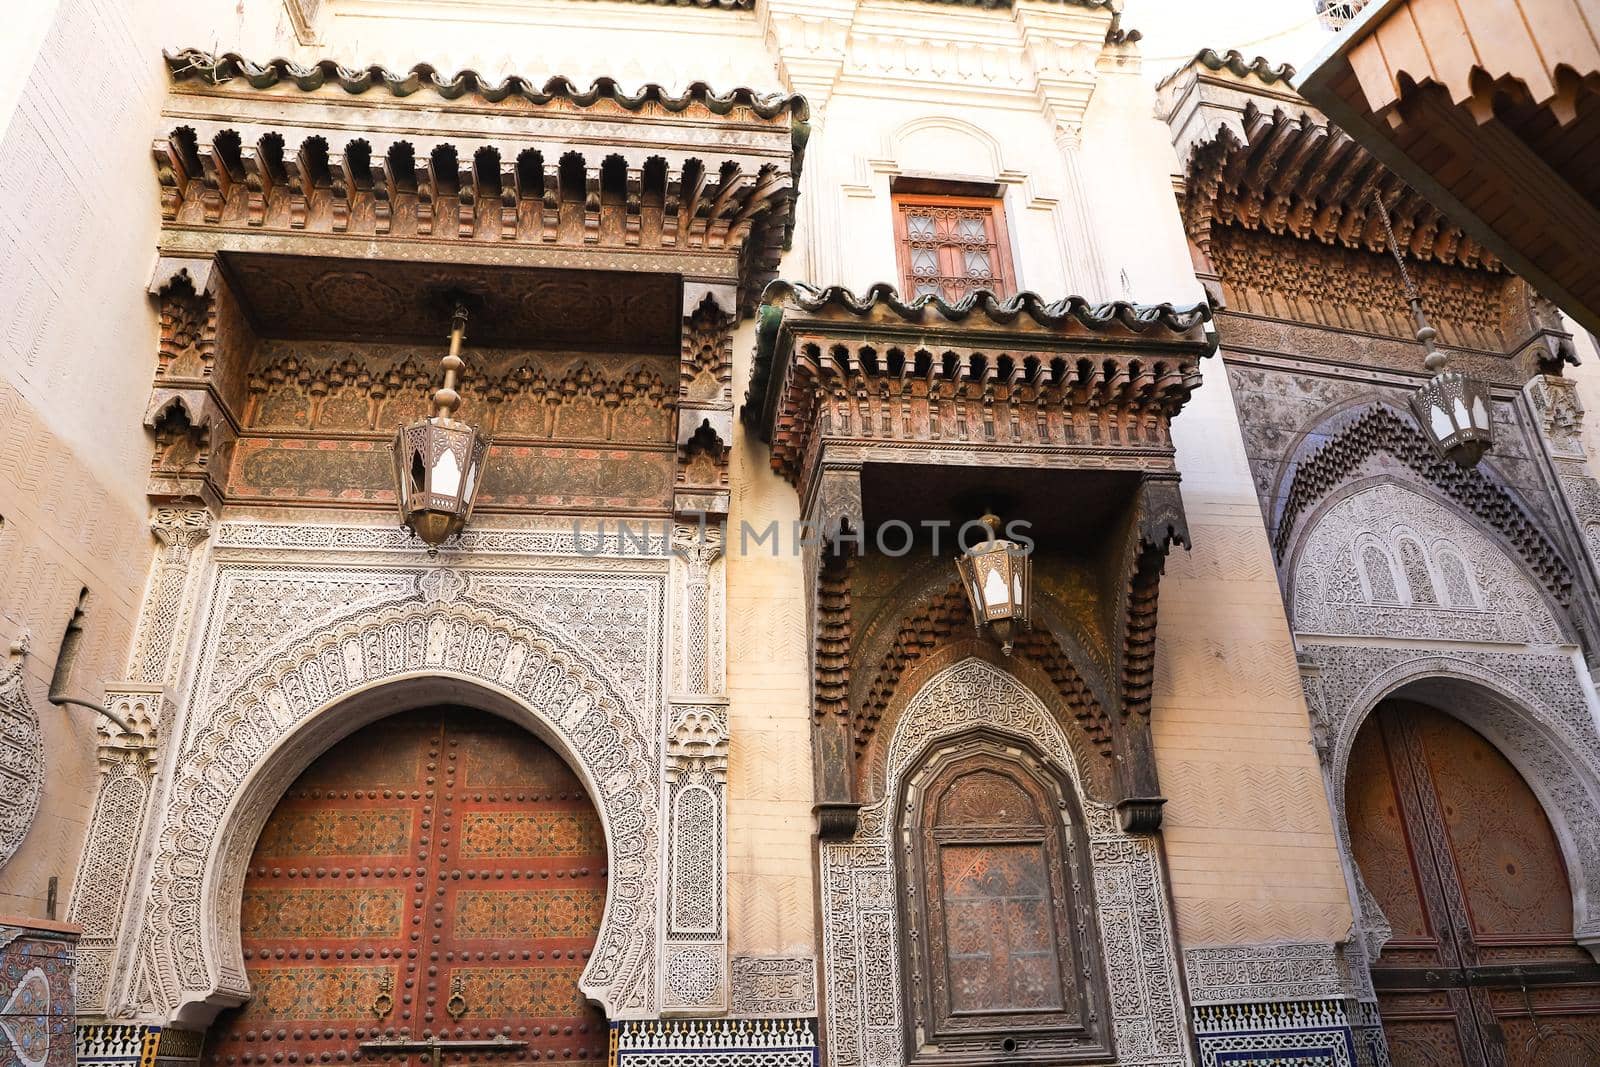 Door of a Building in Fez City, Morocco